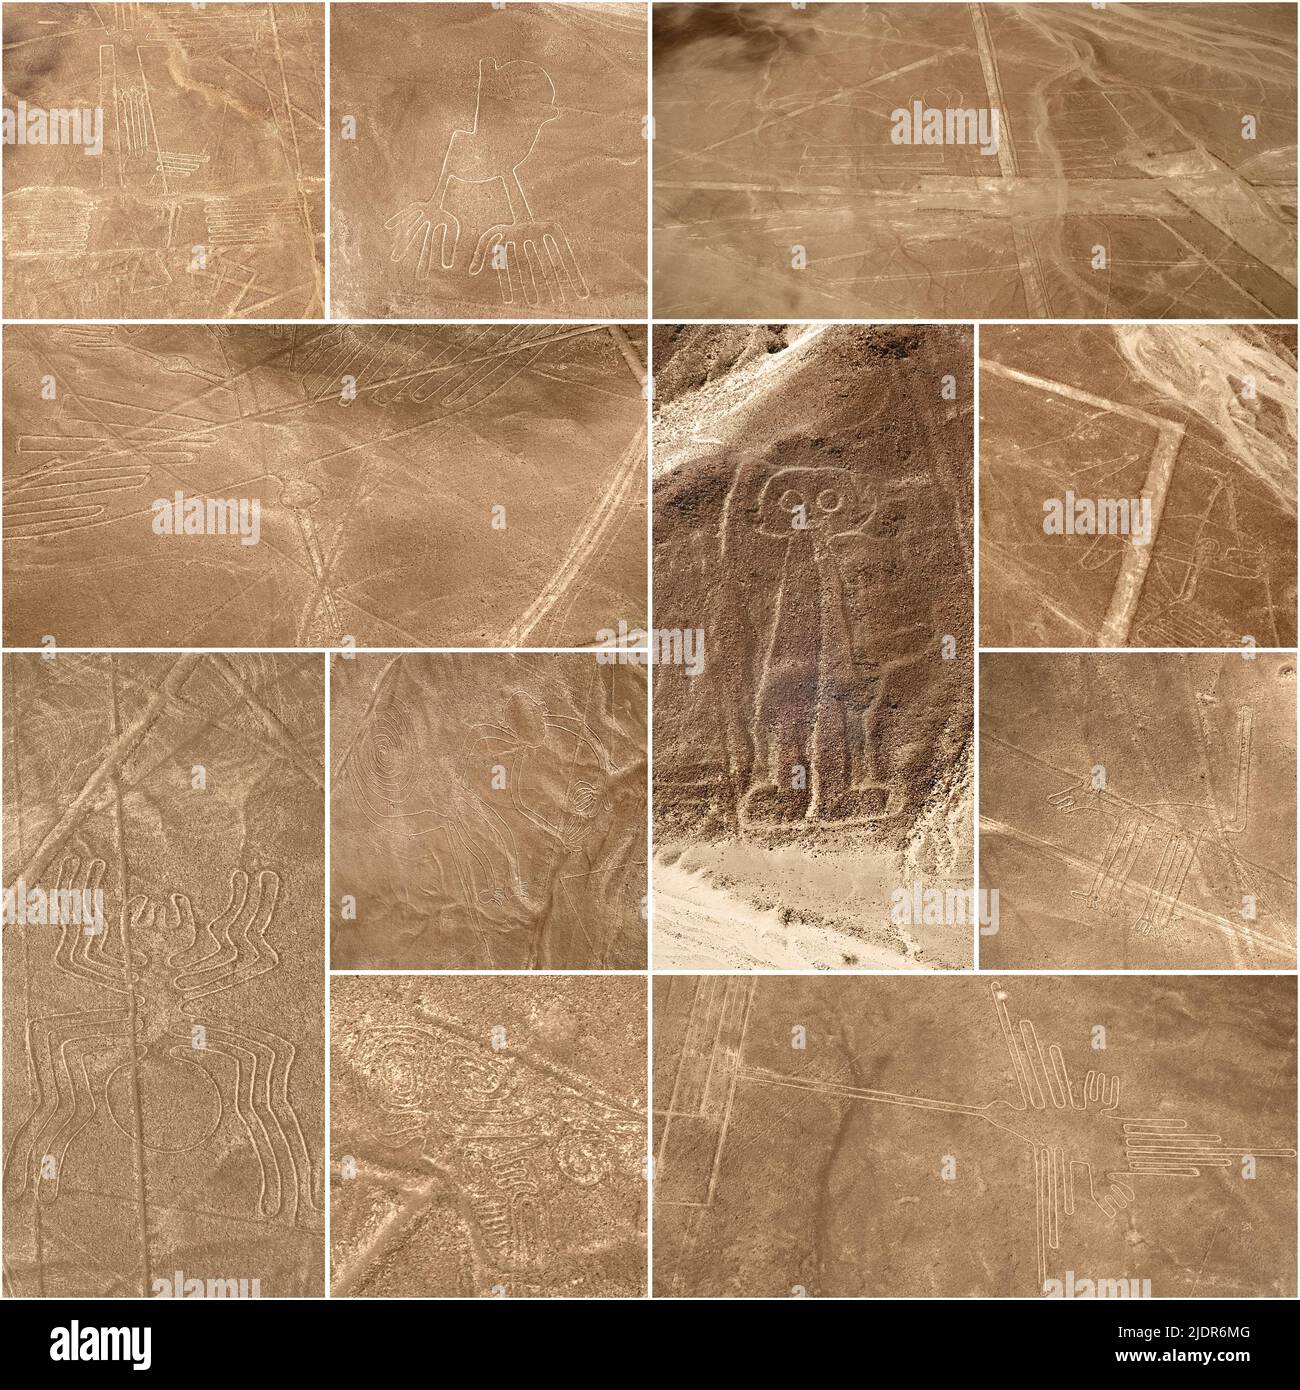 Patrimonio dell'UNESCO: Linee e geoglifi di Nazca, Perù - collage (dall'alto a sinistra: Uccello marino, mano, pellicano, condor, gigante, balena, ragno, scimmia, cane, scor Foto Stock